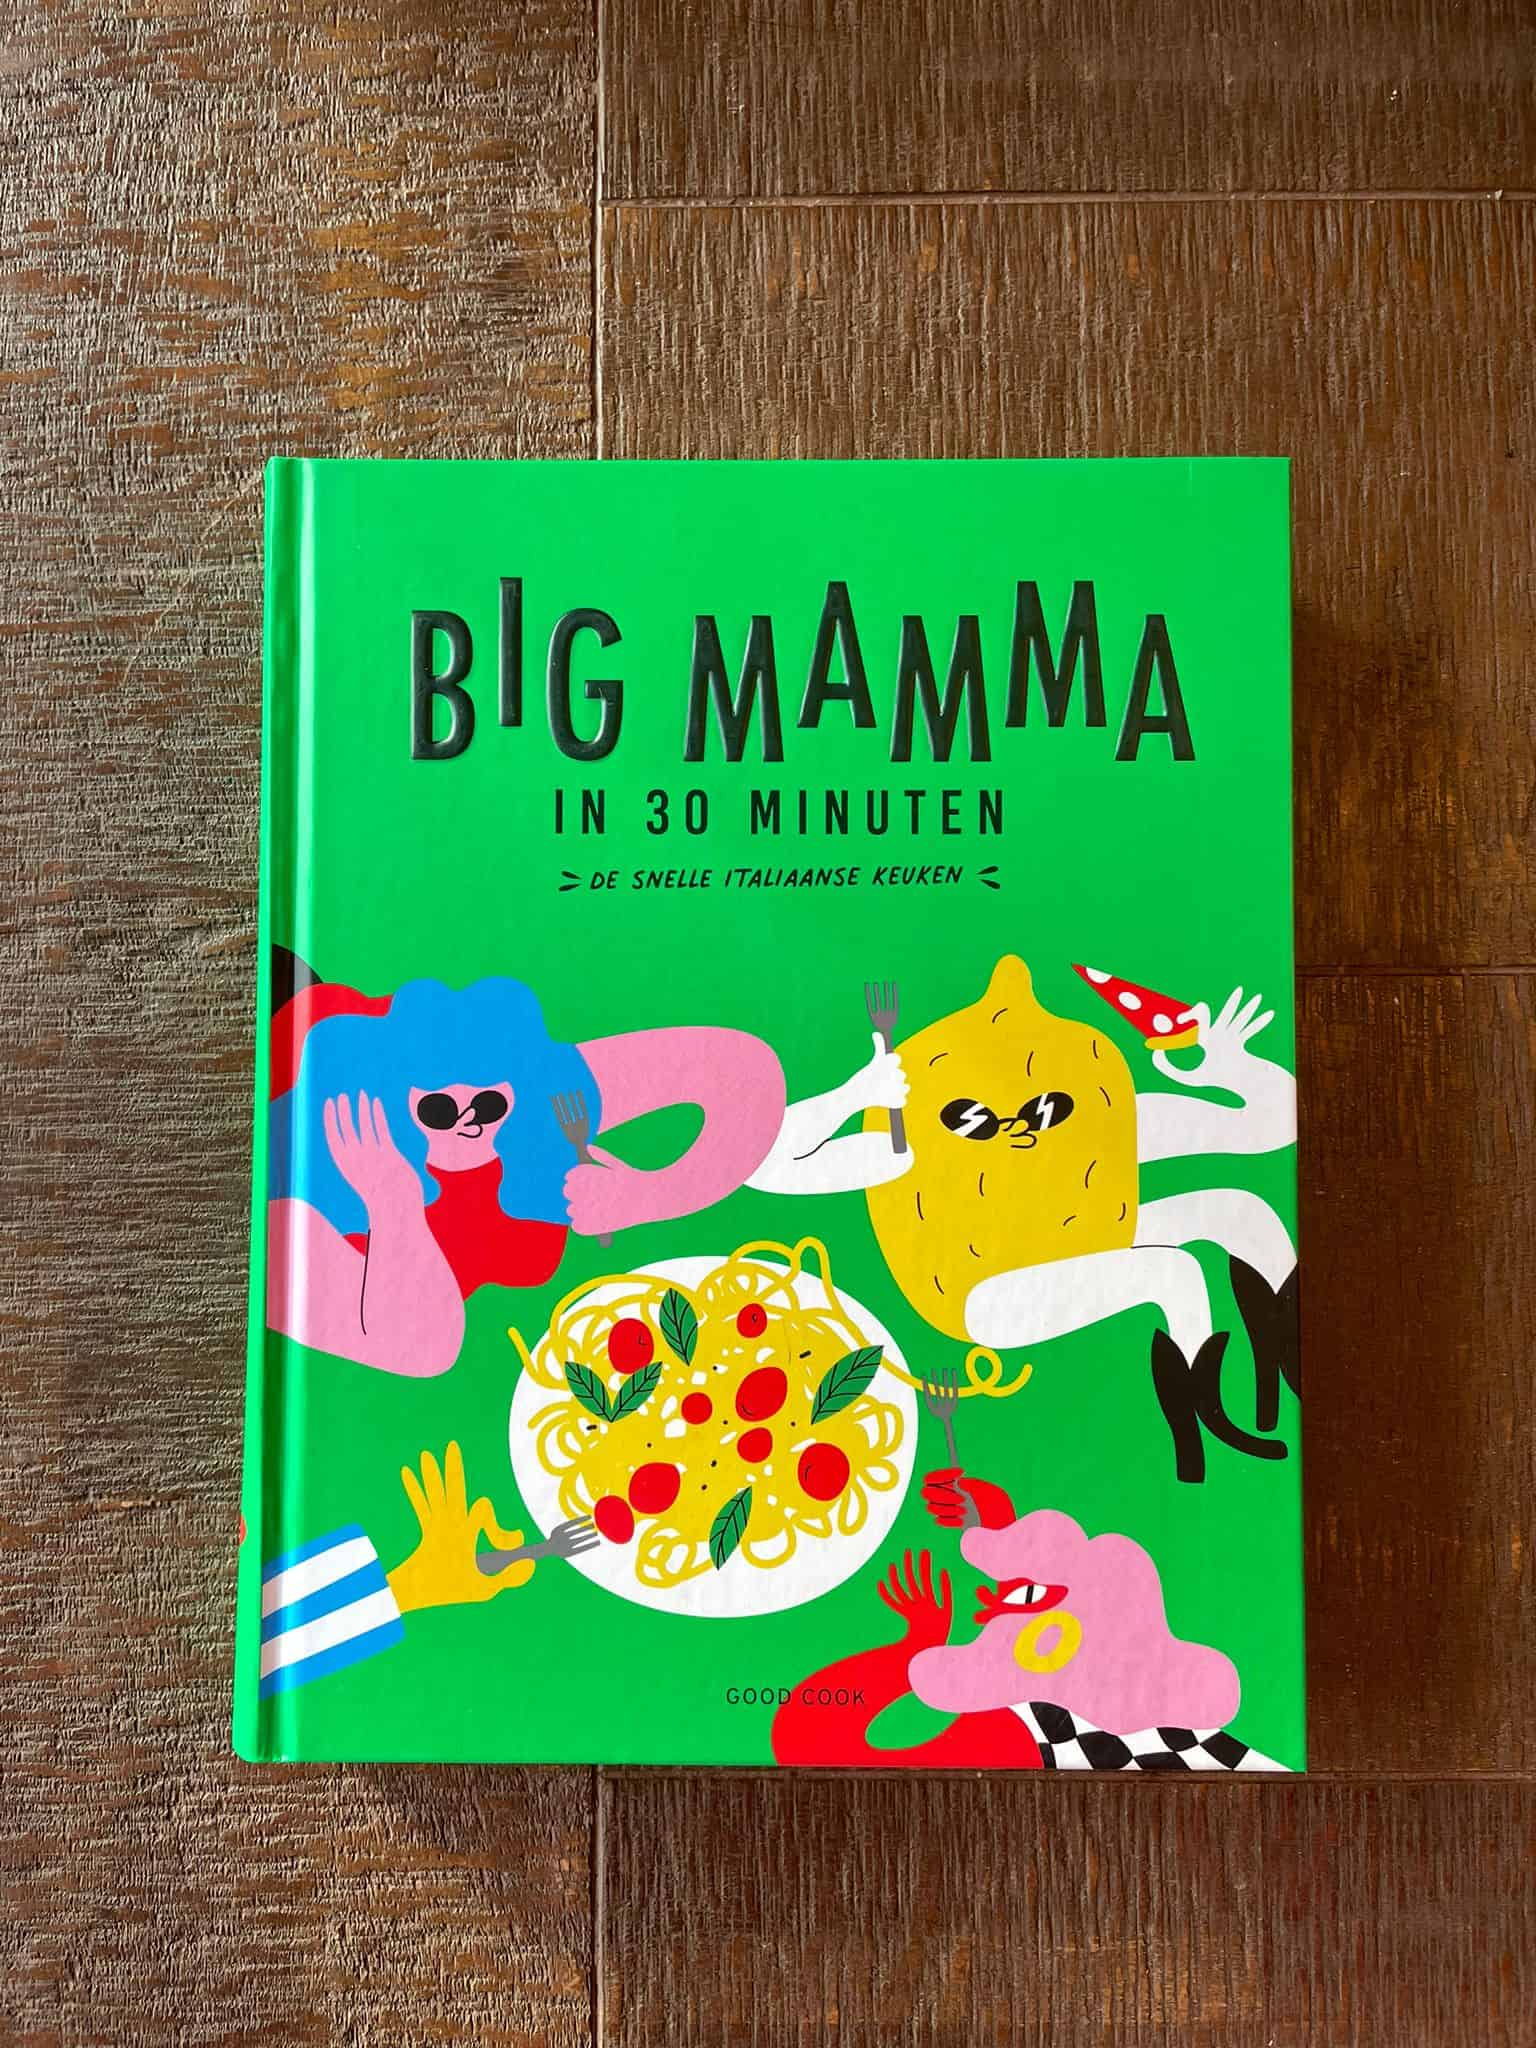 Review: Big Mamma in 30 minuten